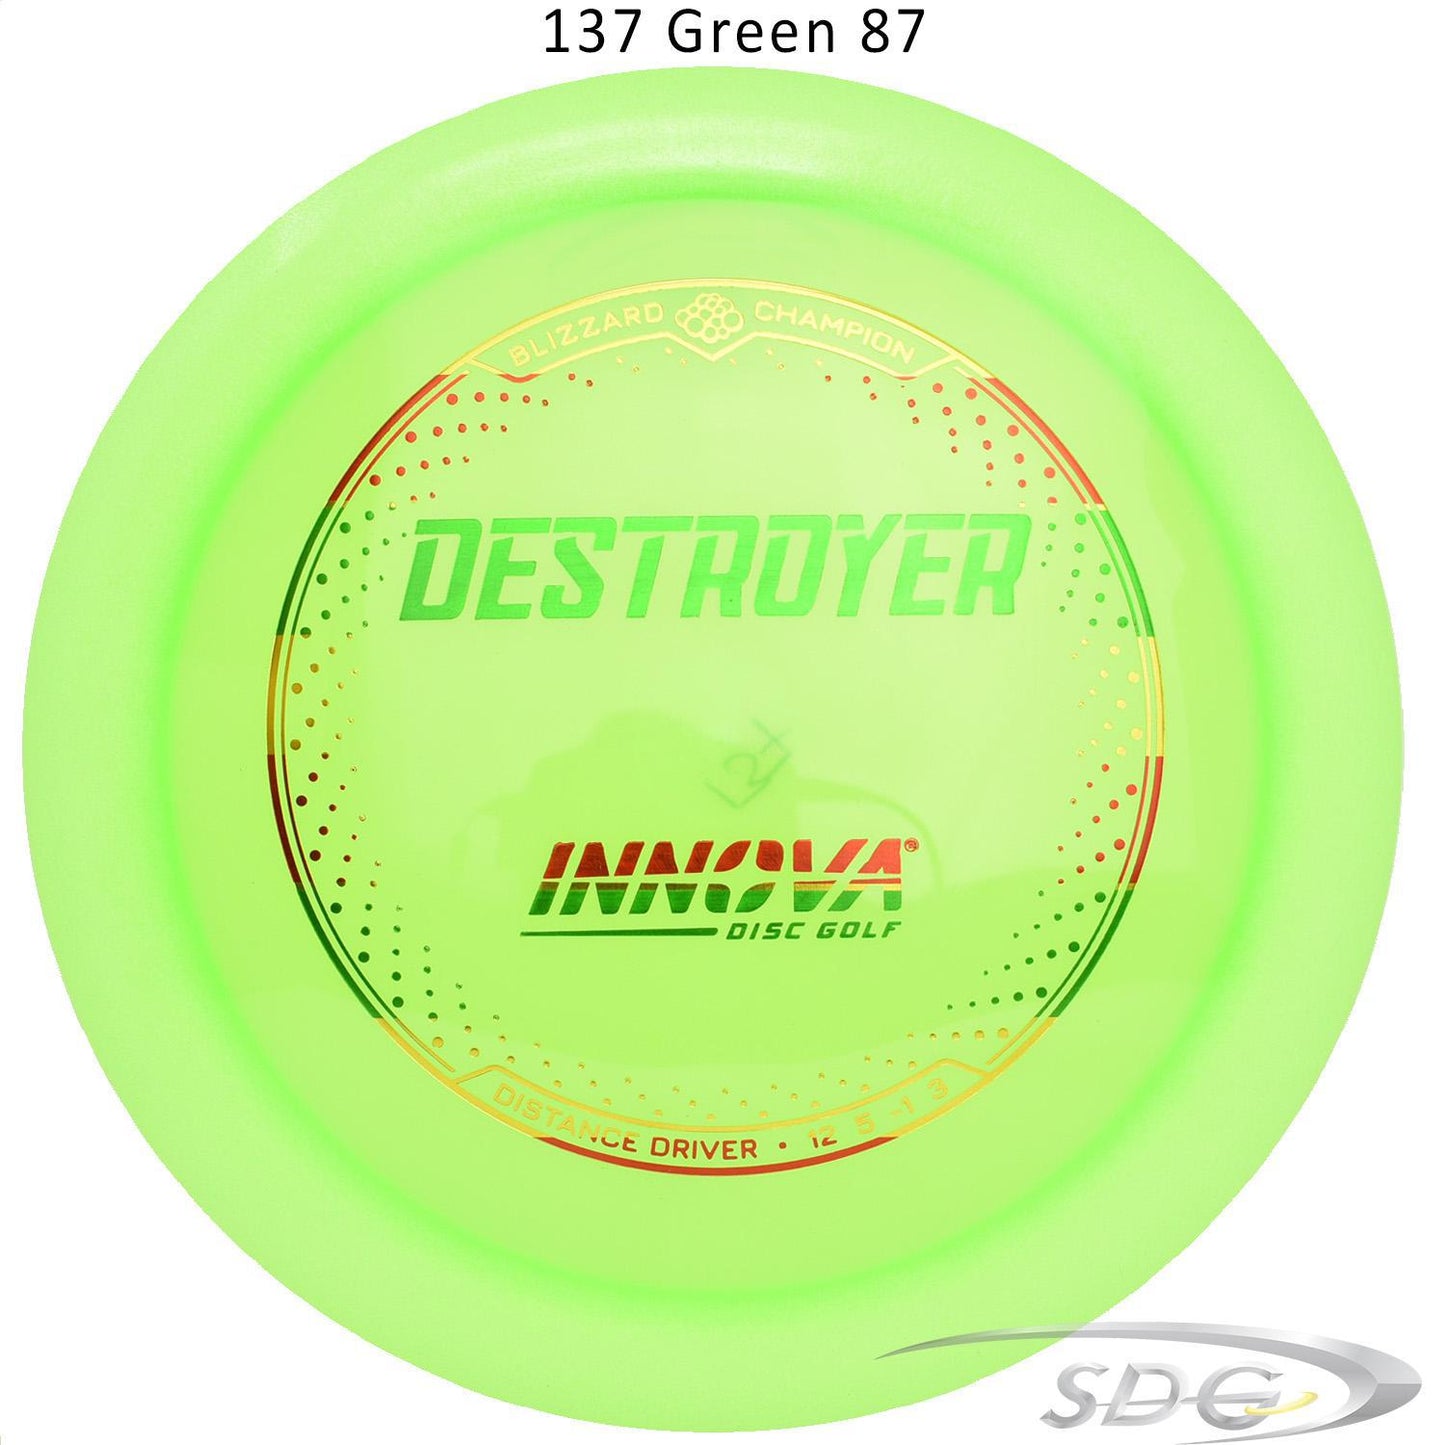 innova-blizzard-champion-destroyer-disc-golf-distance-driver 137 Green 87 